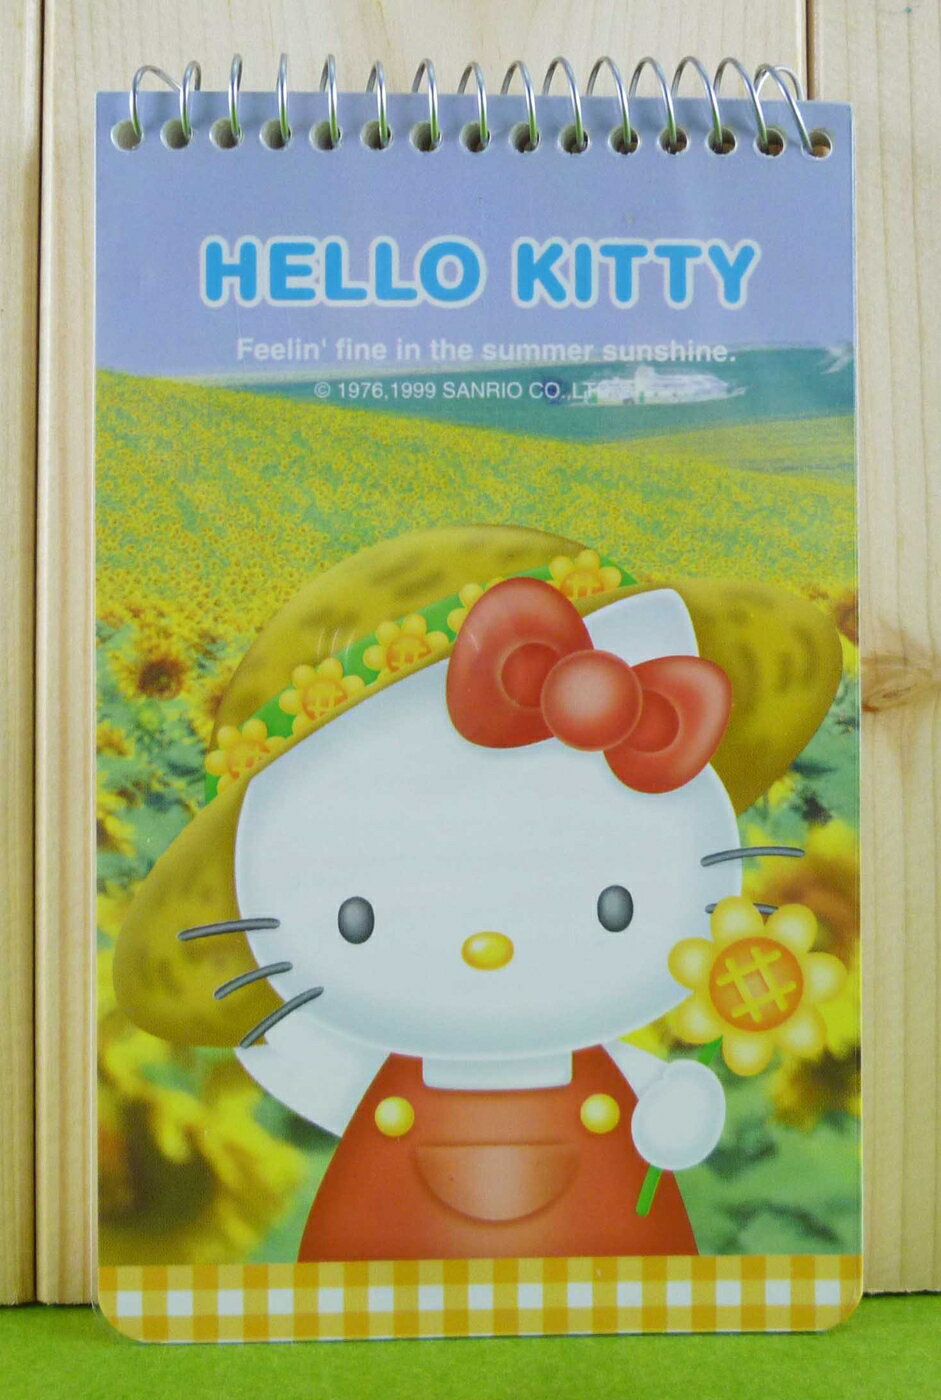 【震撼精品百貨】Hello Kitty 凱蒂貓 筆記本 向日葵【共1款】 震撼日式精品百貨